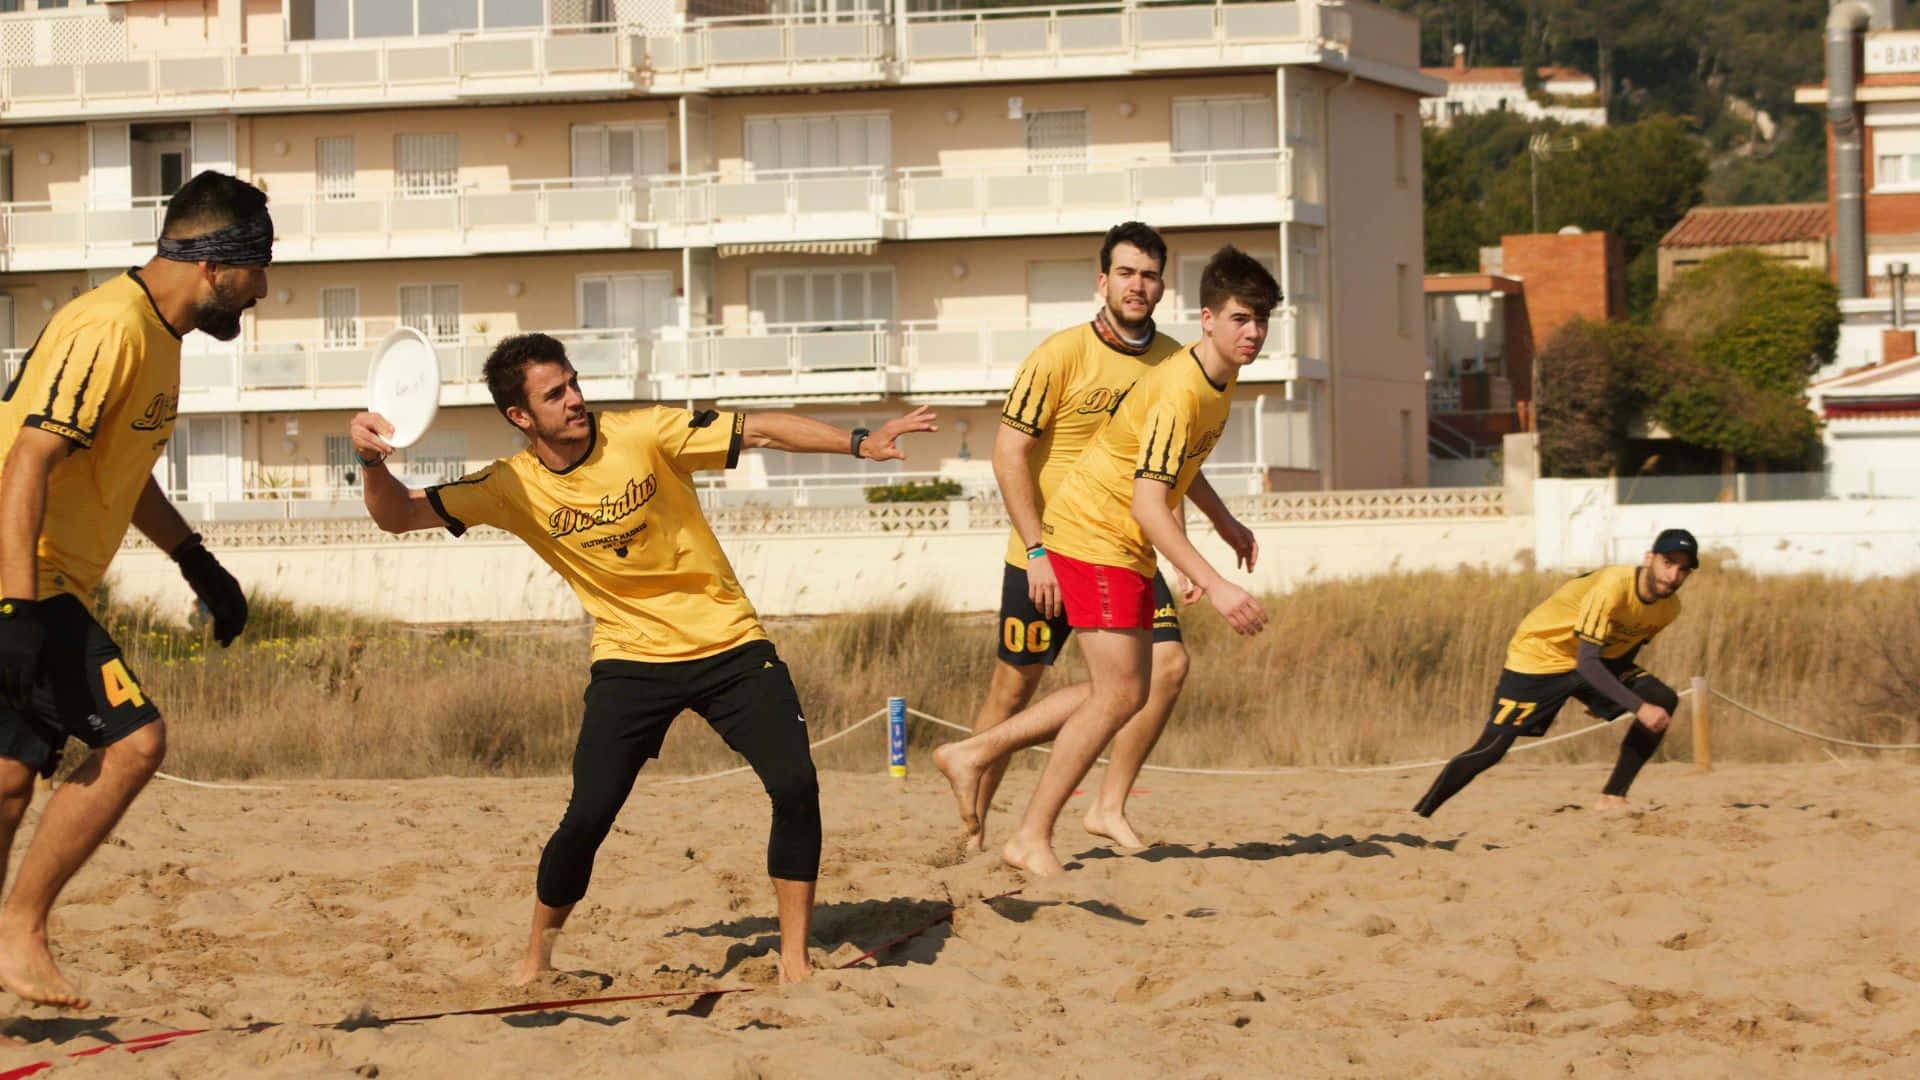 Umgrupo De Homens Jogando Frisbee Na Praia